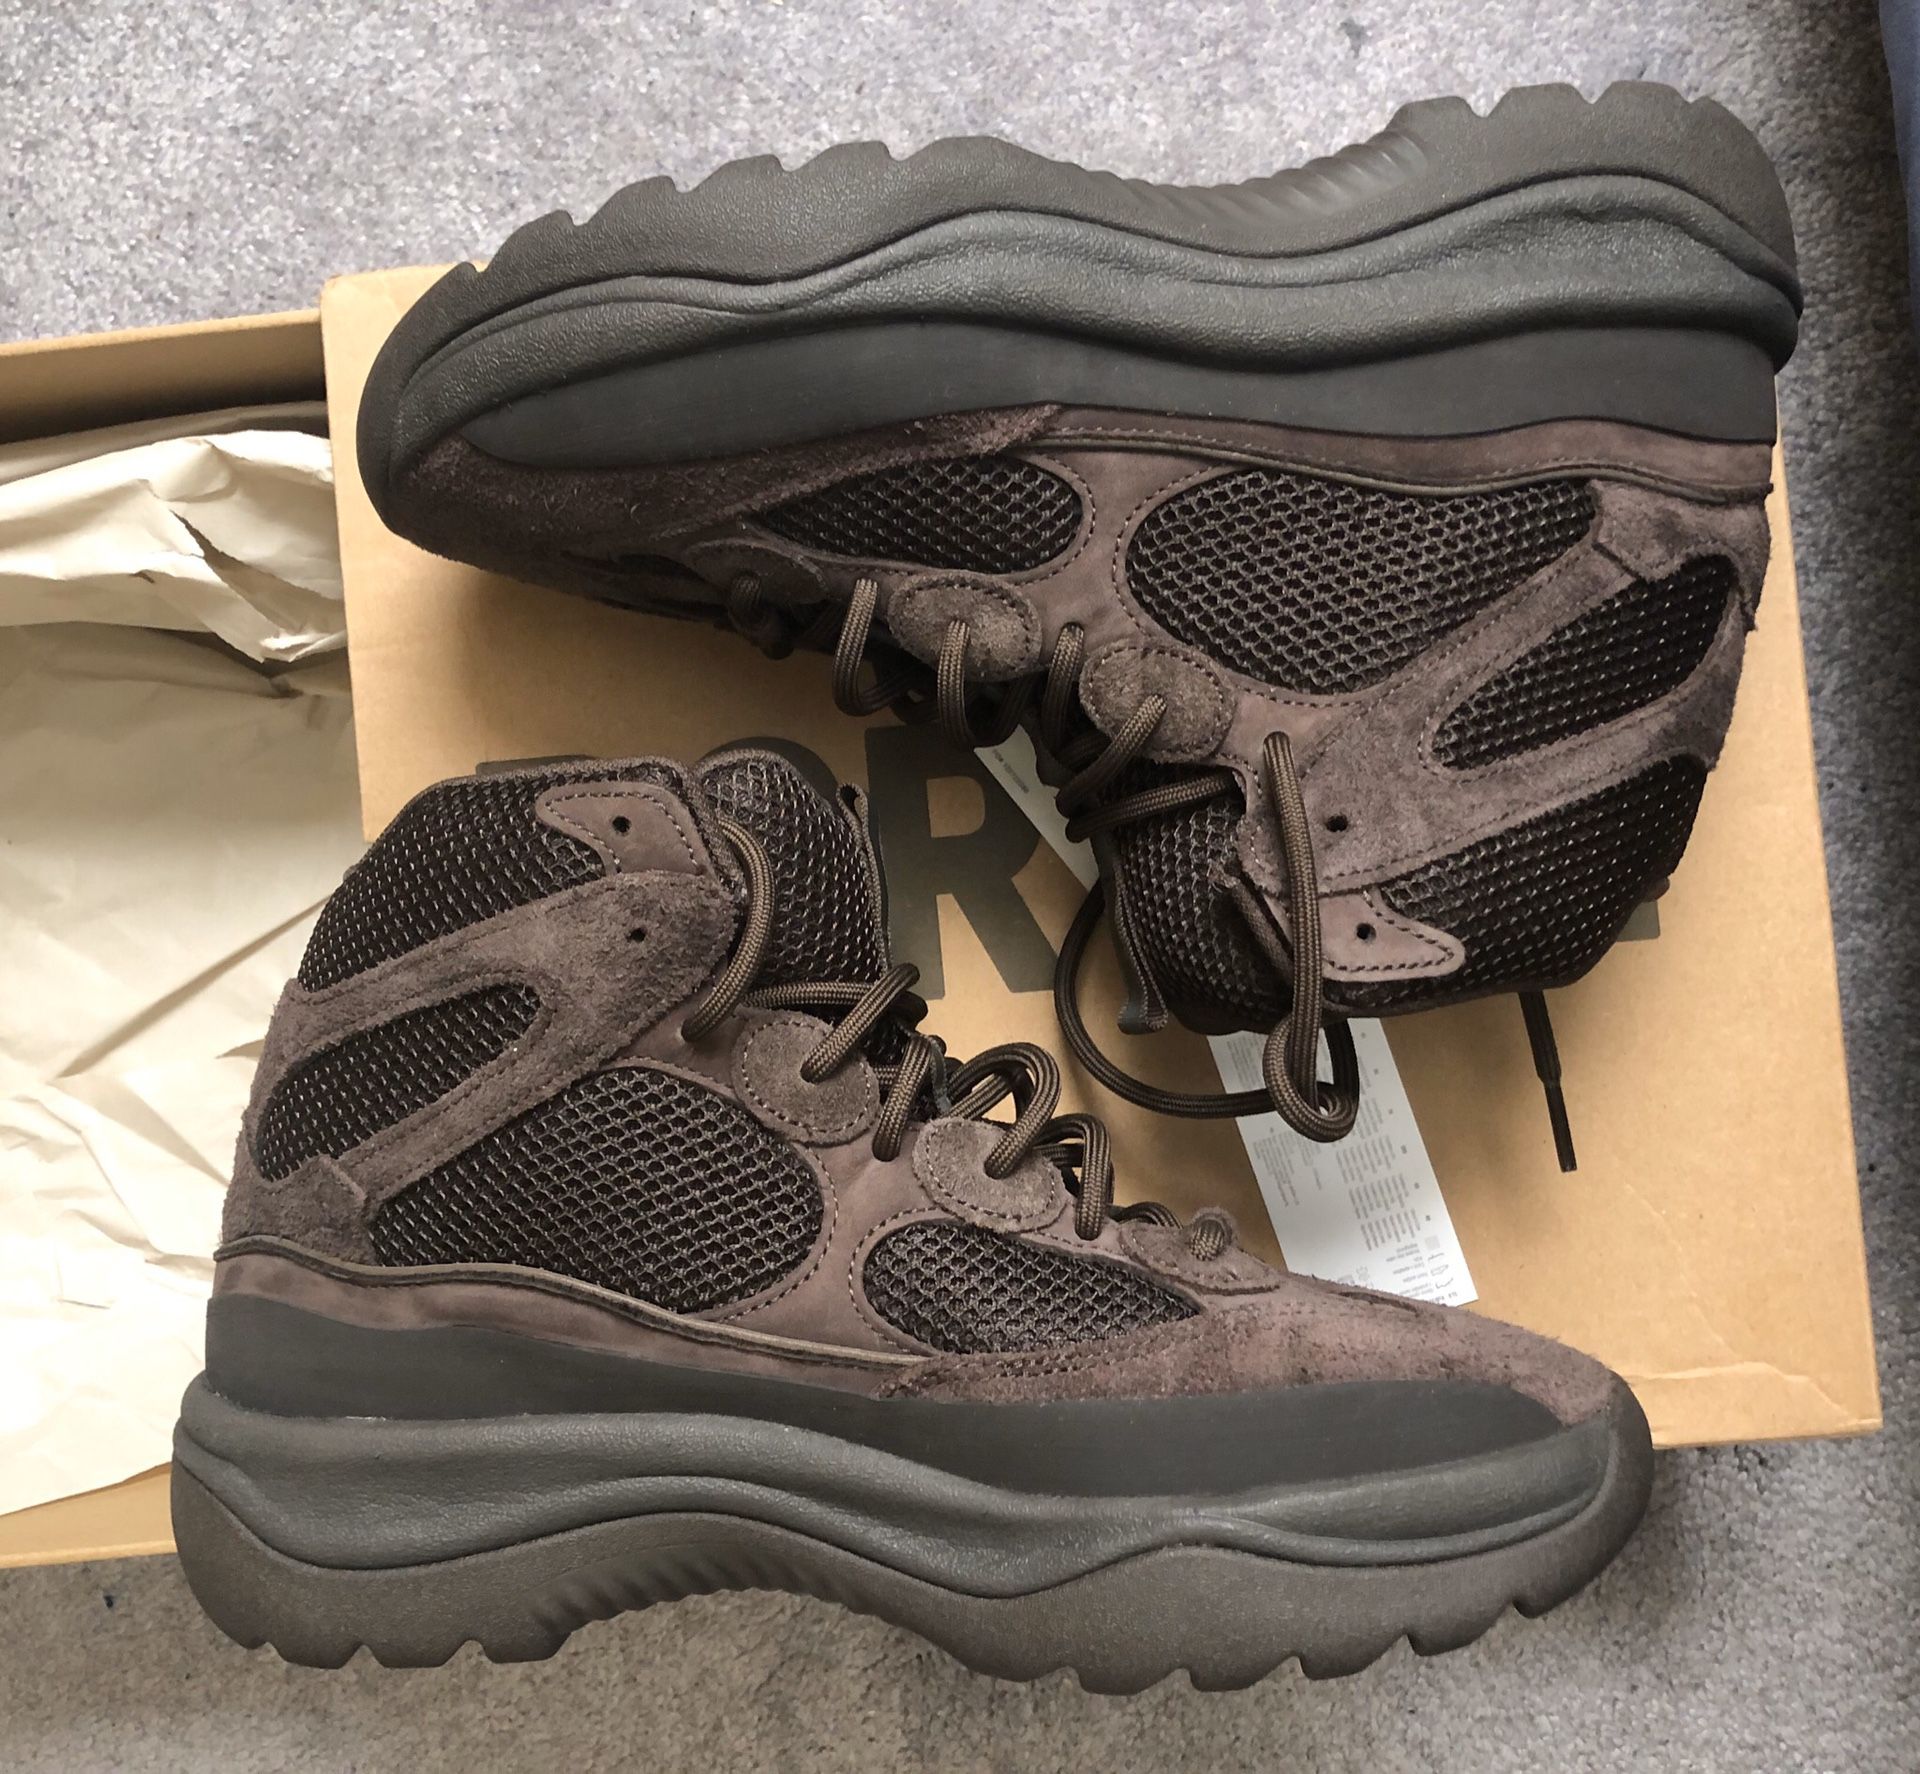 Adidas Yeezy Desert Boot size 9 (10)